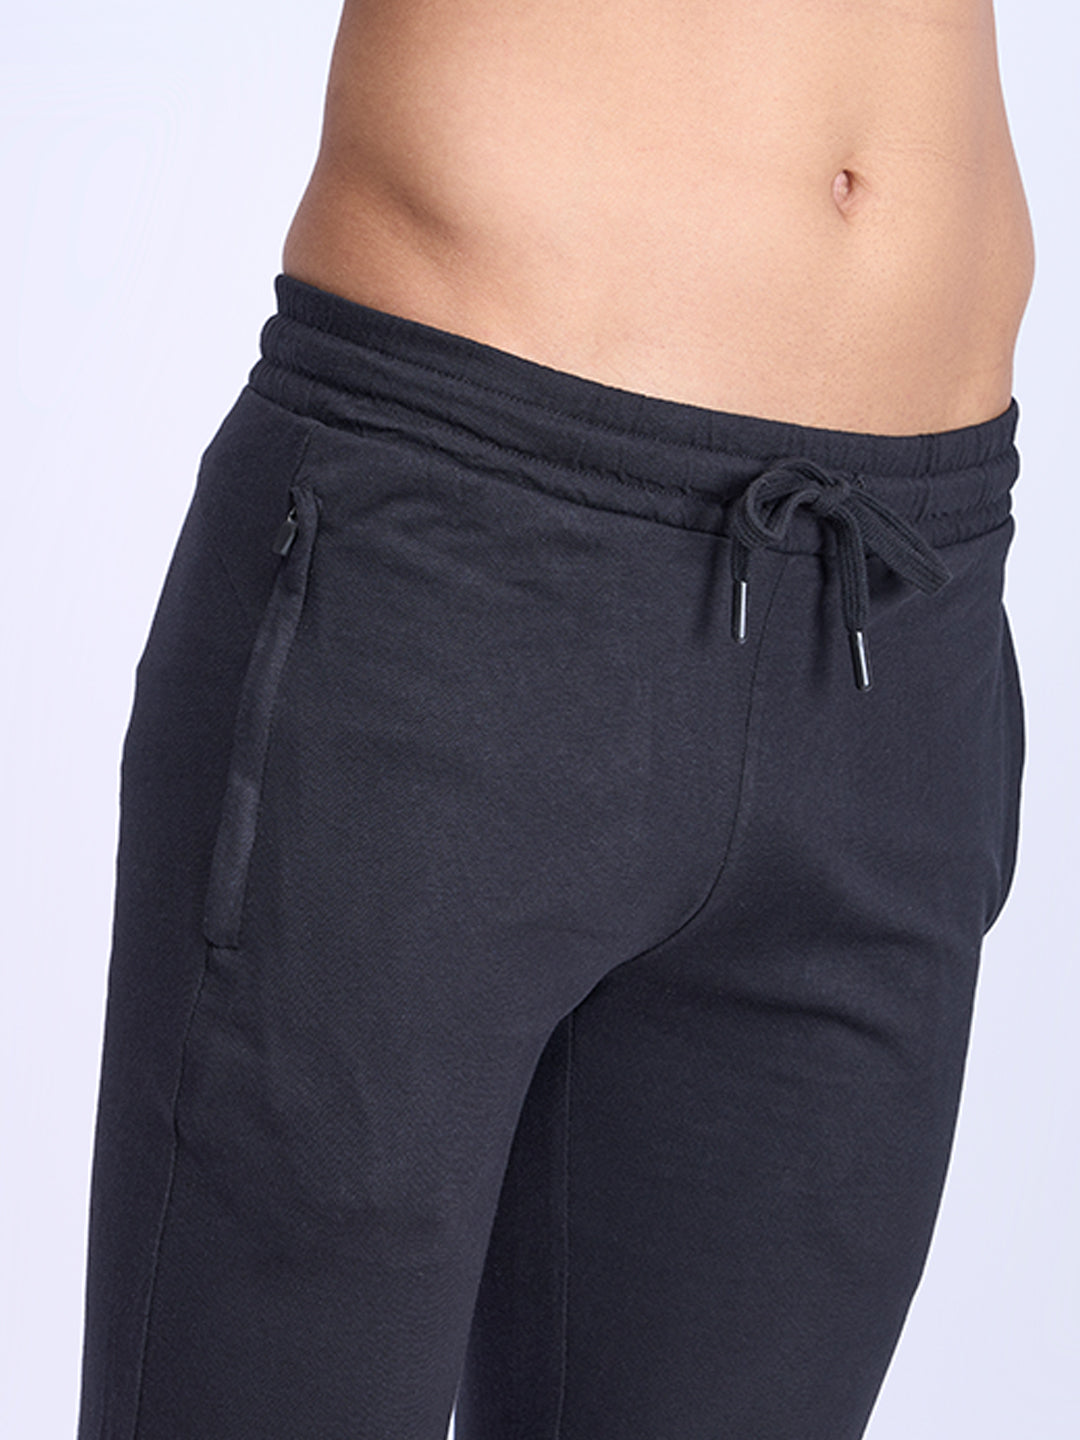 Super Combed Cotton Side Sew Panel Smart Fit  Zipper Pocket Track Pant Black-ETK1